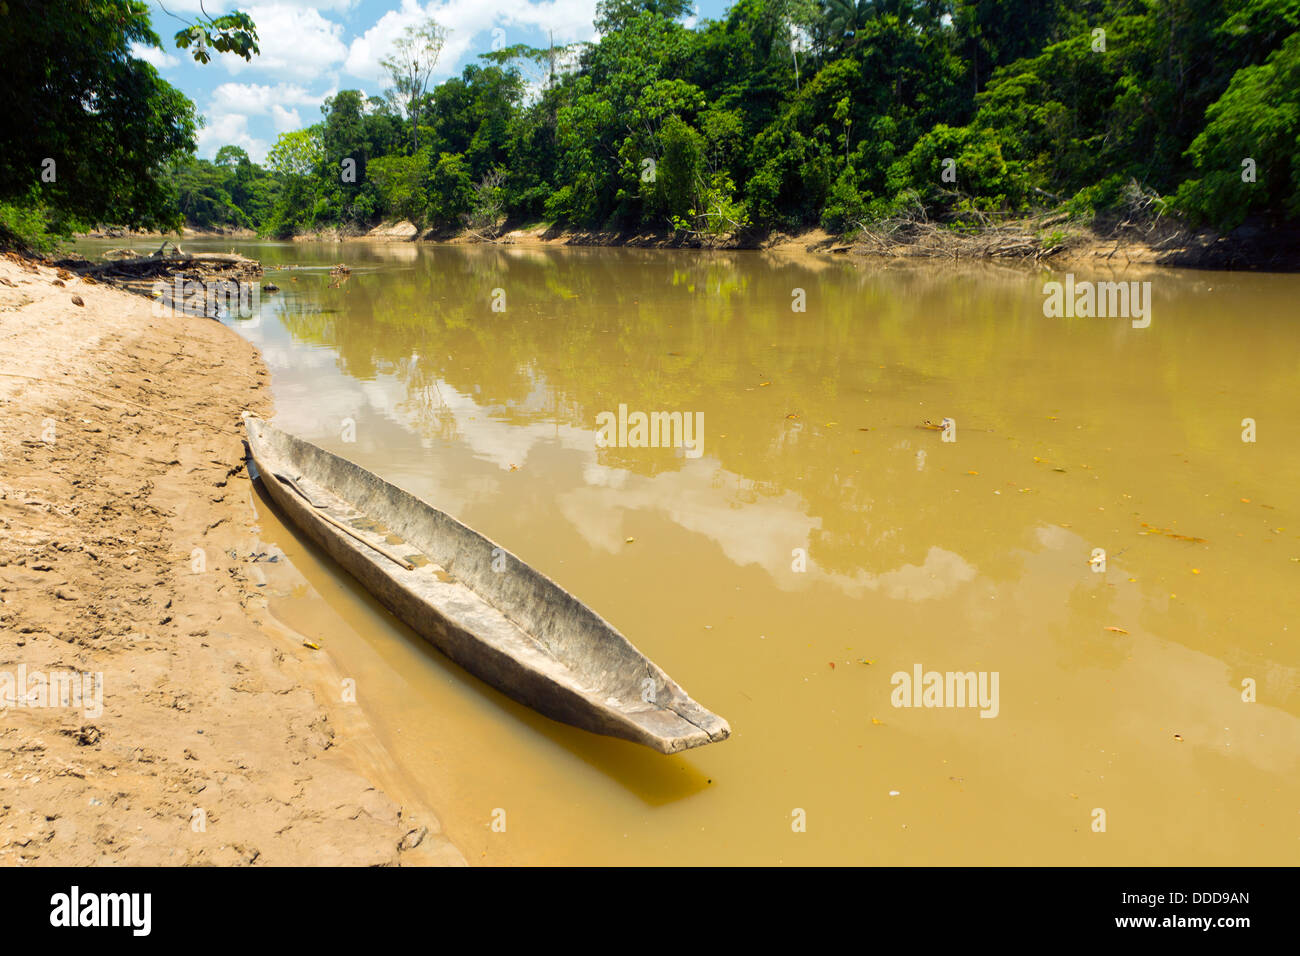 Dugout canoe beside the Rio Cononaco in the Ecuadorian Amazon Stock Photo